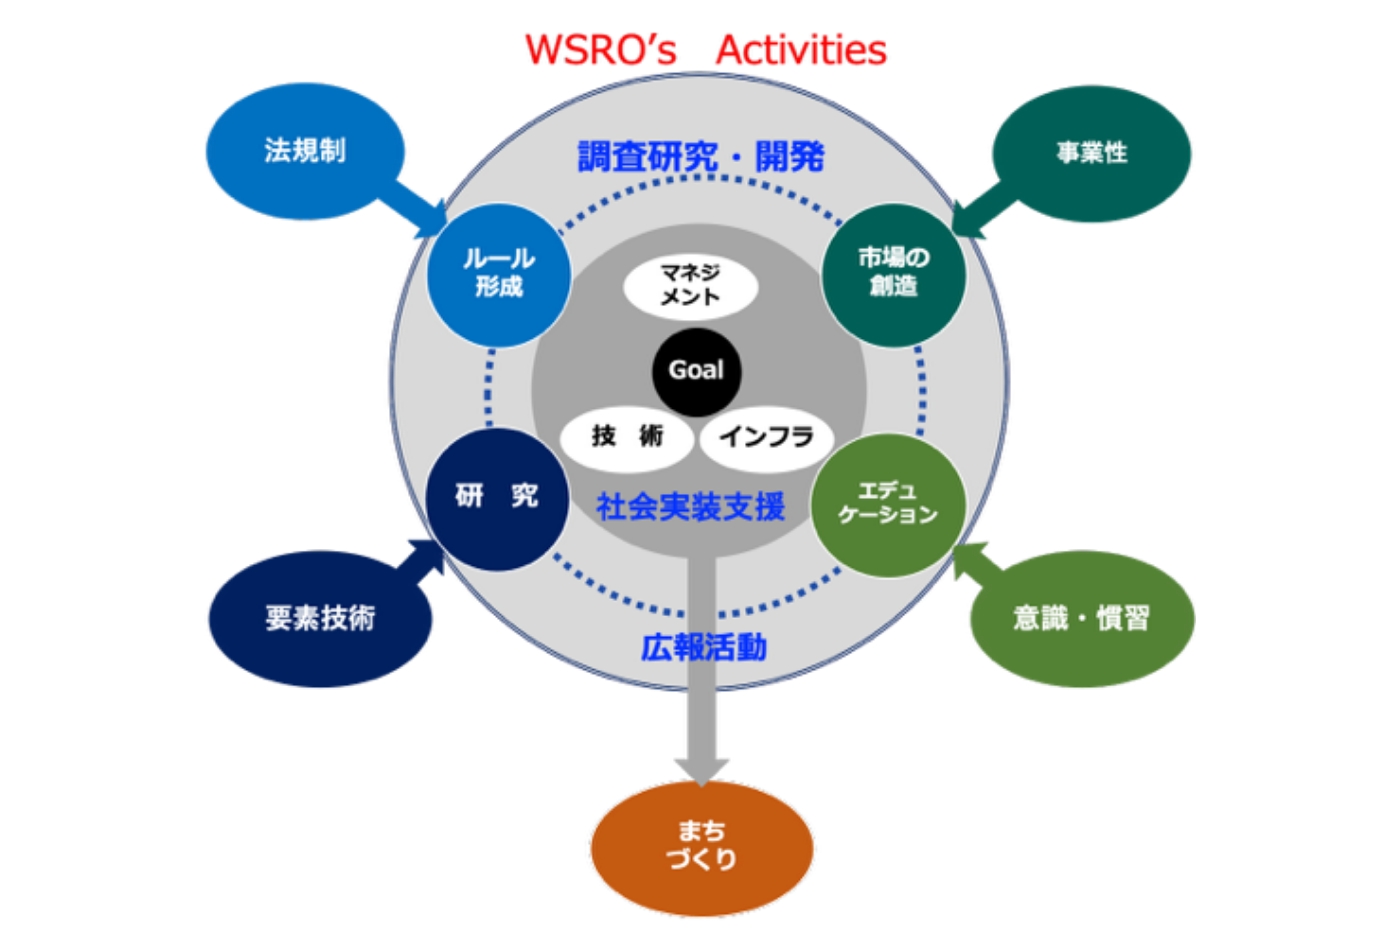 一般社団法人ウォーター・スマート・レジリエンス研究協会（WSRO）